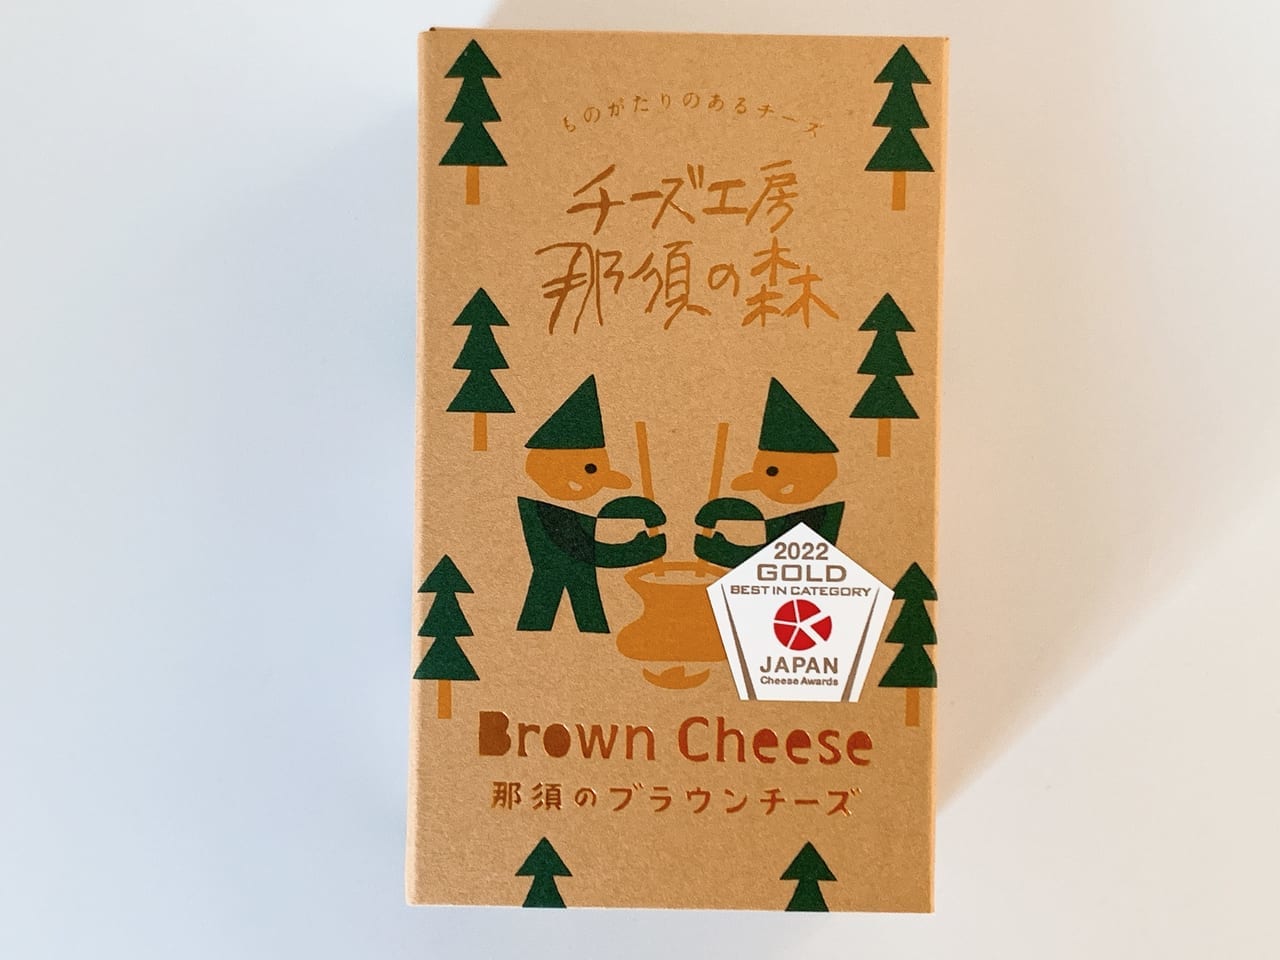 チーズ工房那須の森のブラウンチーズ01